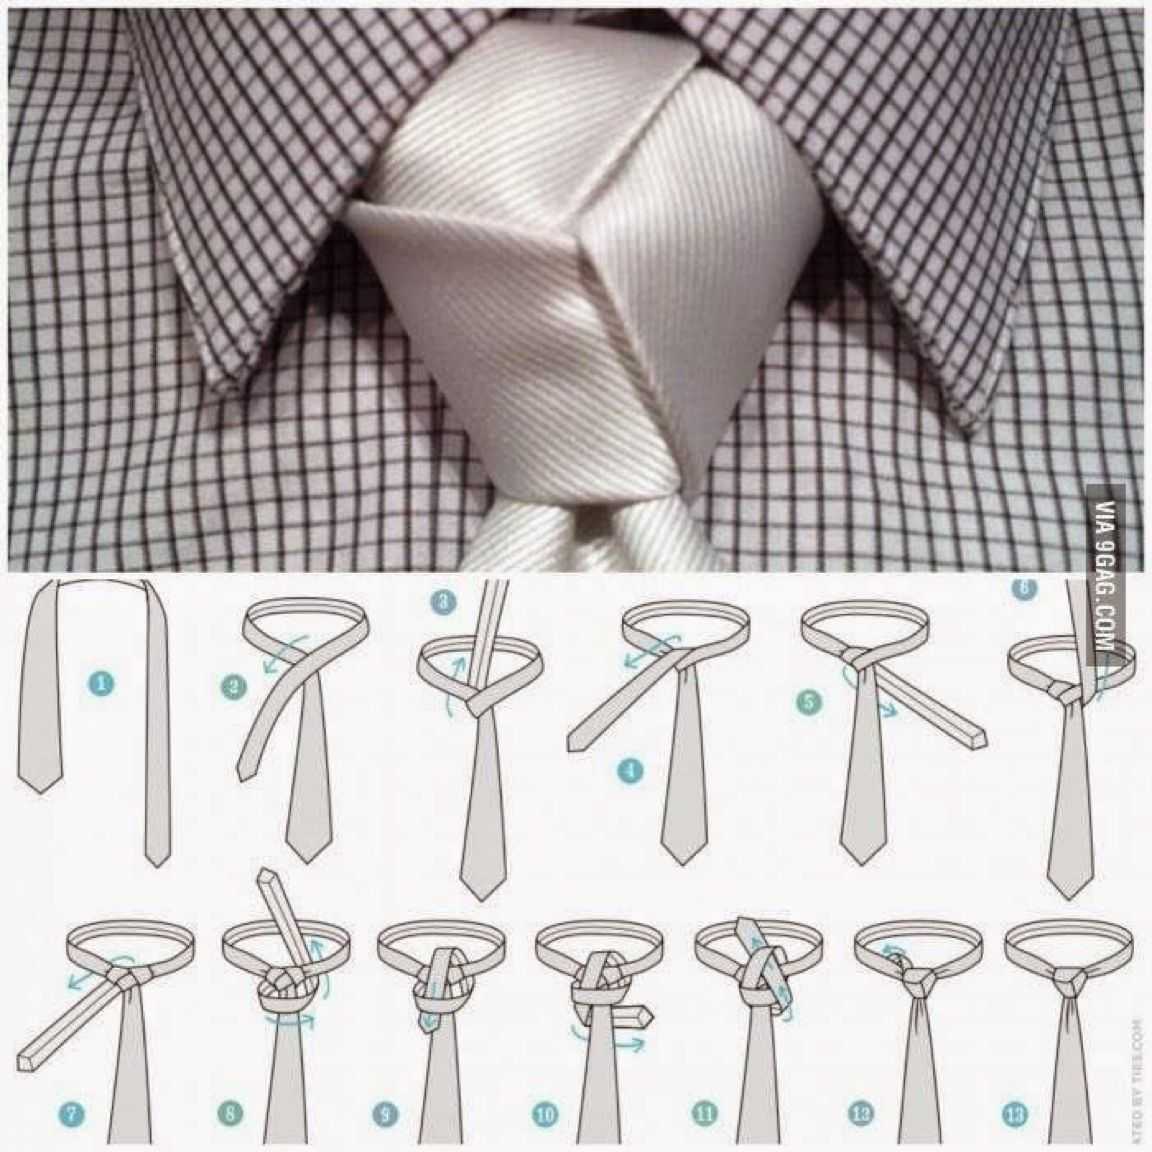 Как завязывать галстук правильно, пошагово с фото